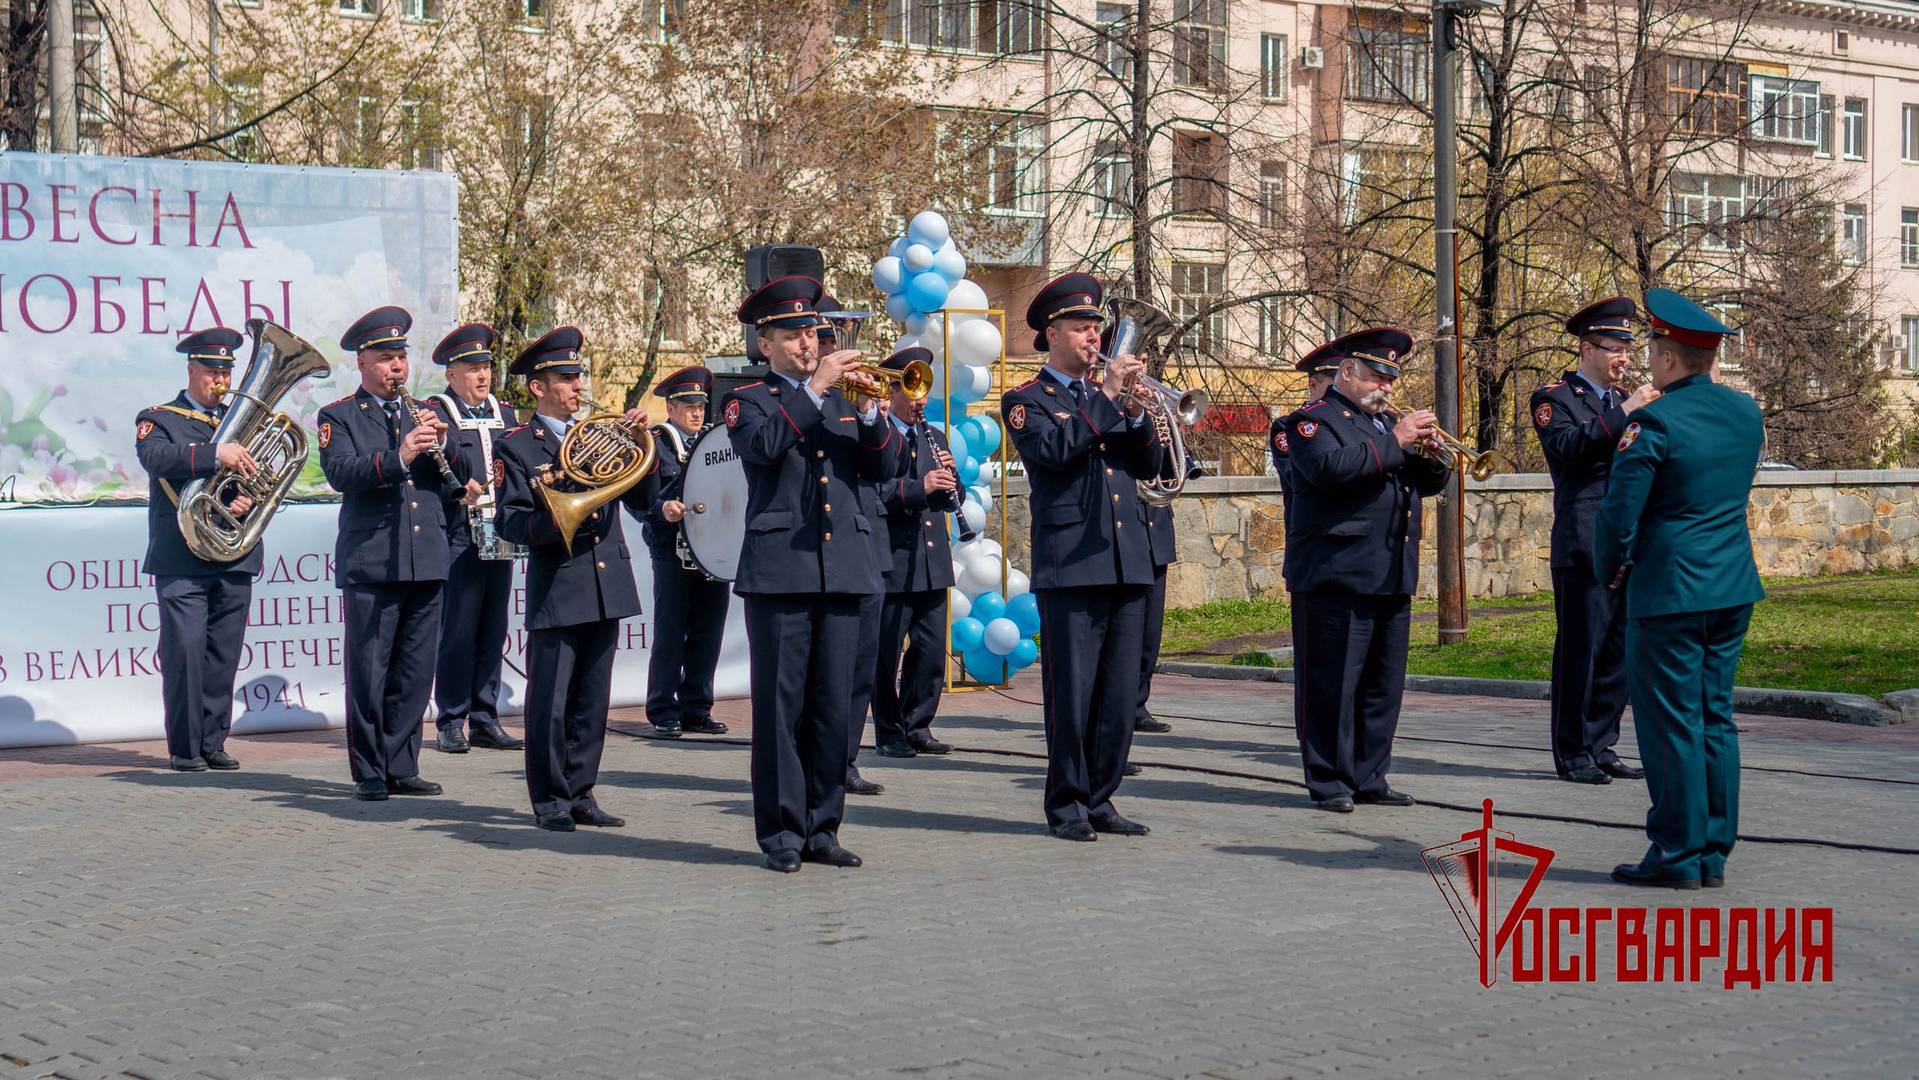 Оркестр Росгвардии выступил на фестивале «Весна Победы» в Челябинске